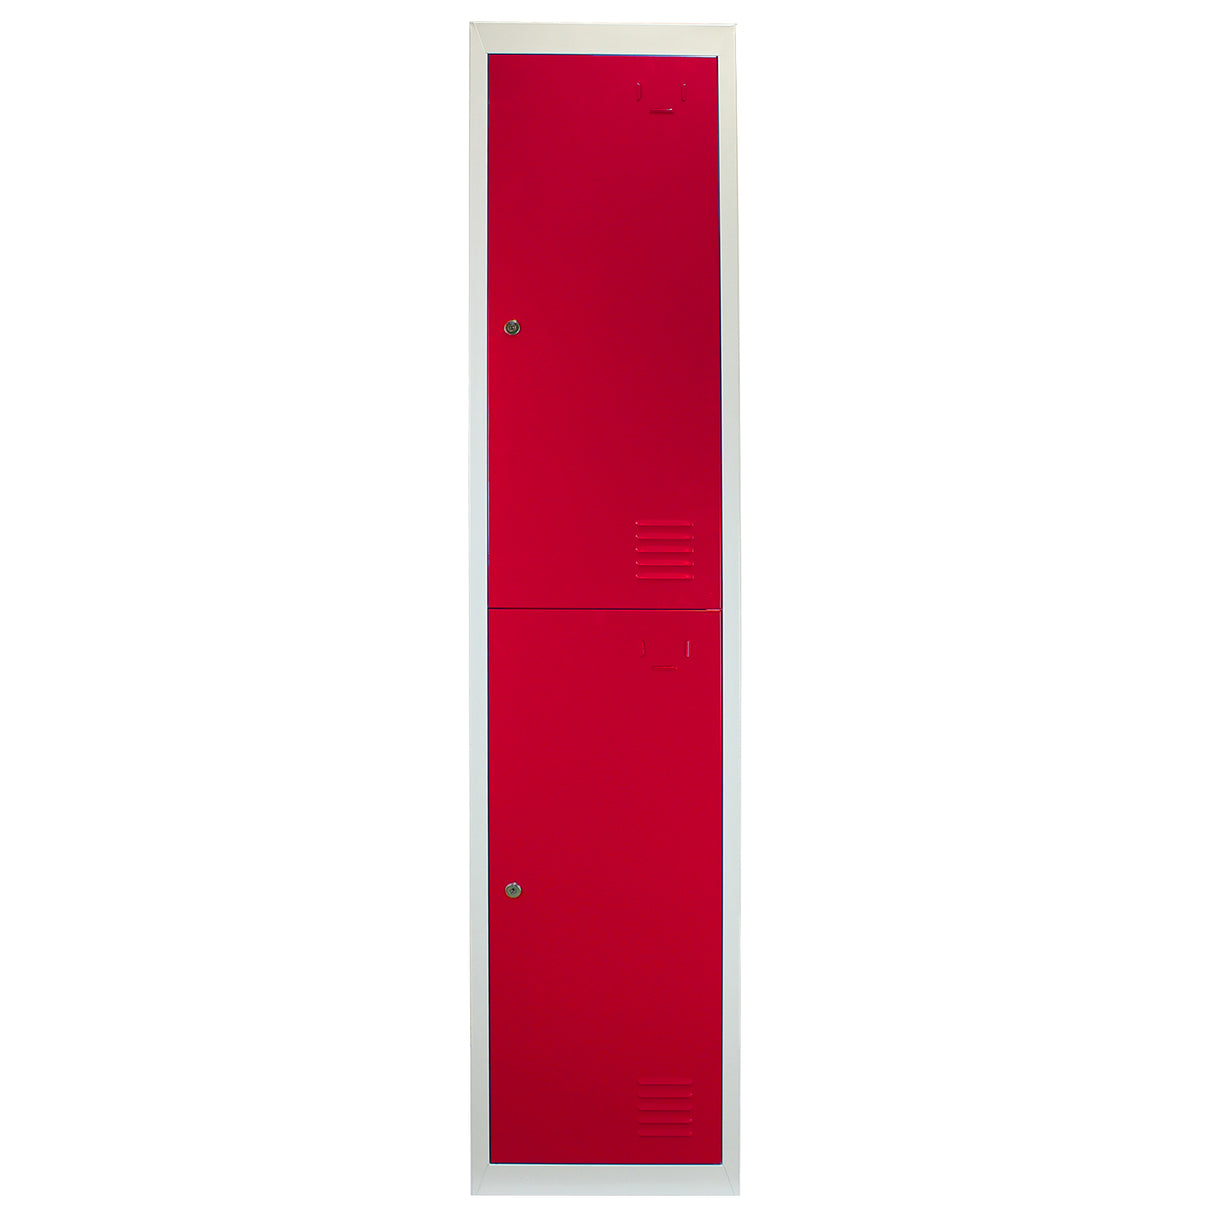 3 Taquillas para Ensamblar con 2 Puertas Rojas de Acero 45cm x 114cm x 180cm